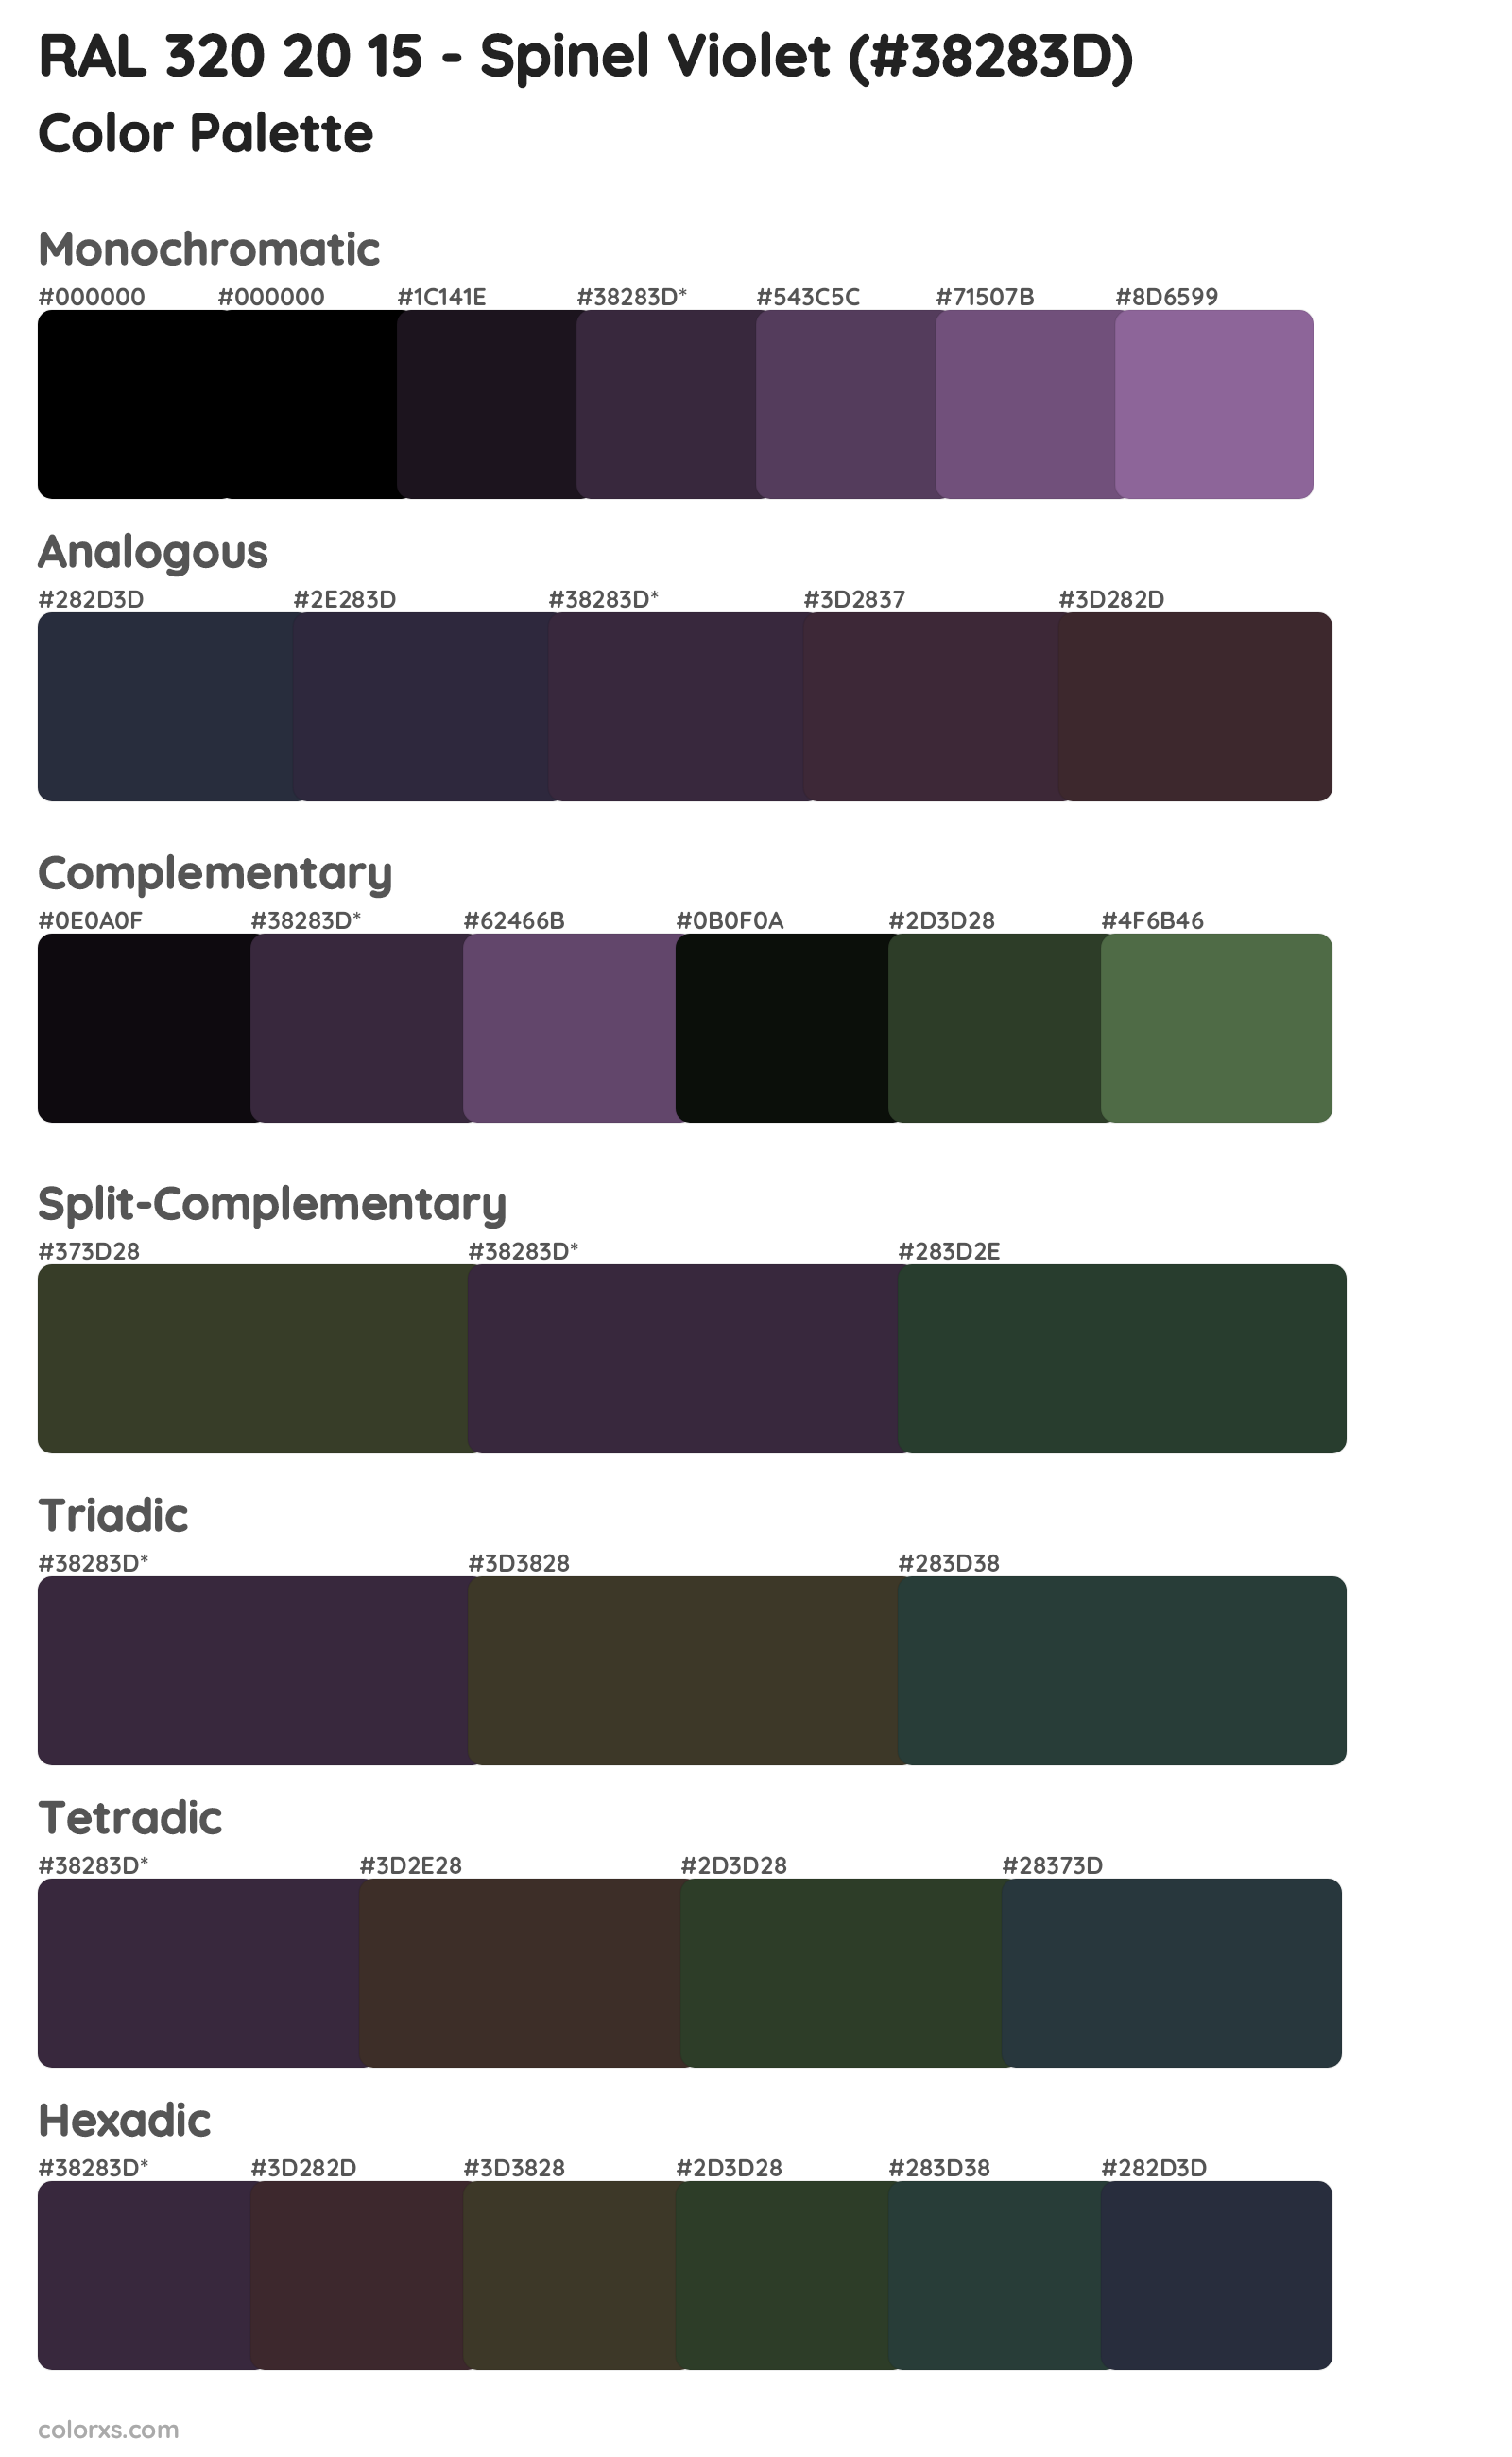 RAL 320 20 15 - Spinel Violet Color Scheme Palettes